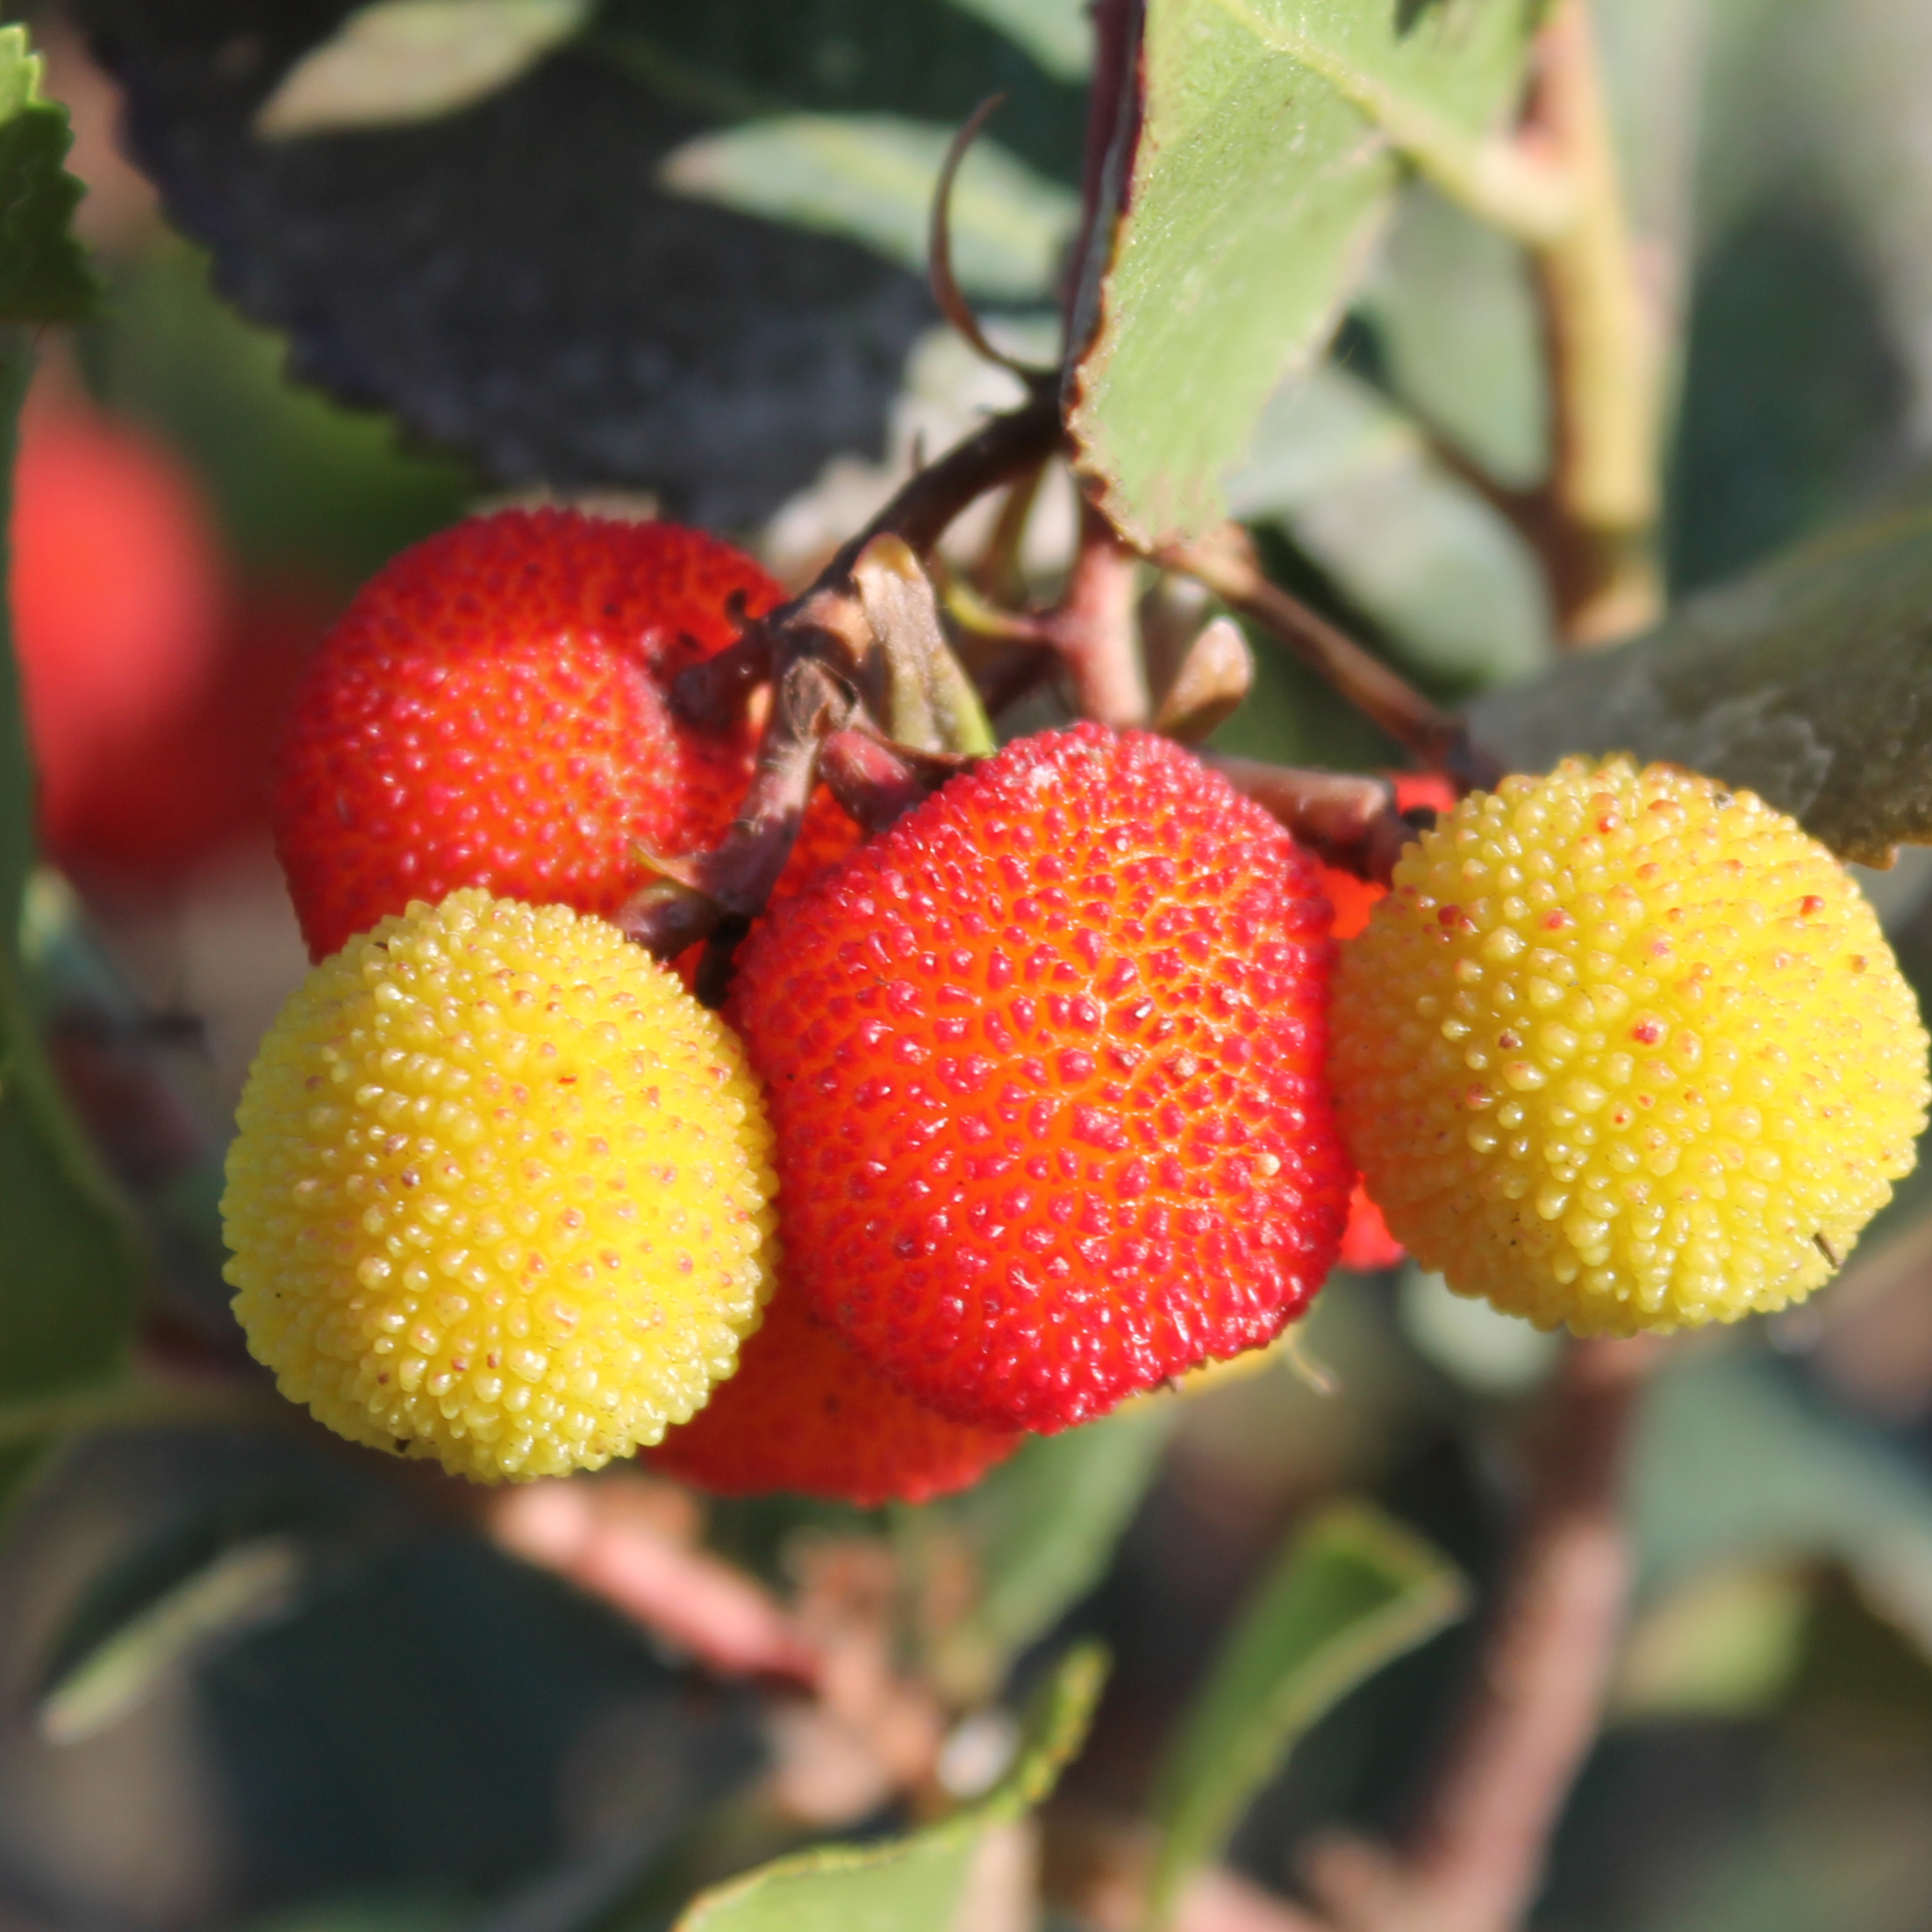 Qulista Samenhaus Rarität Erdbeerbaum ertragreich groß & süß aromatisch im Geschmack Klettererdbeere Hummi Obstsamen mehrjährig Winterhart im Beet & Kübel